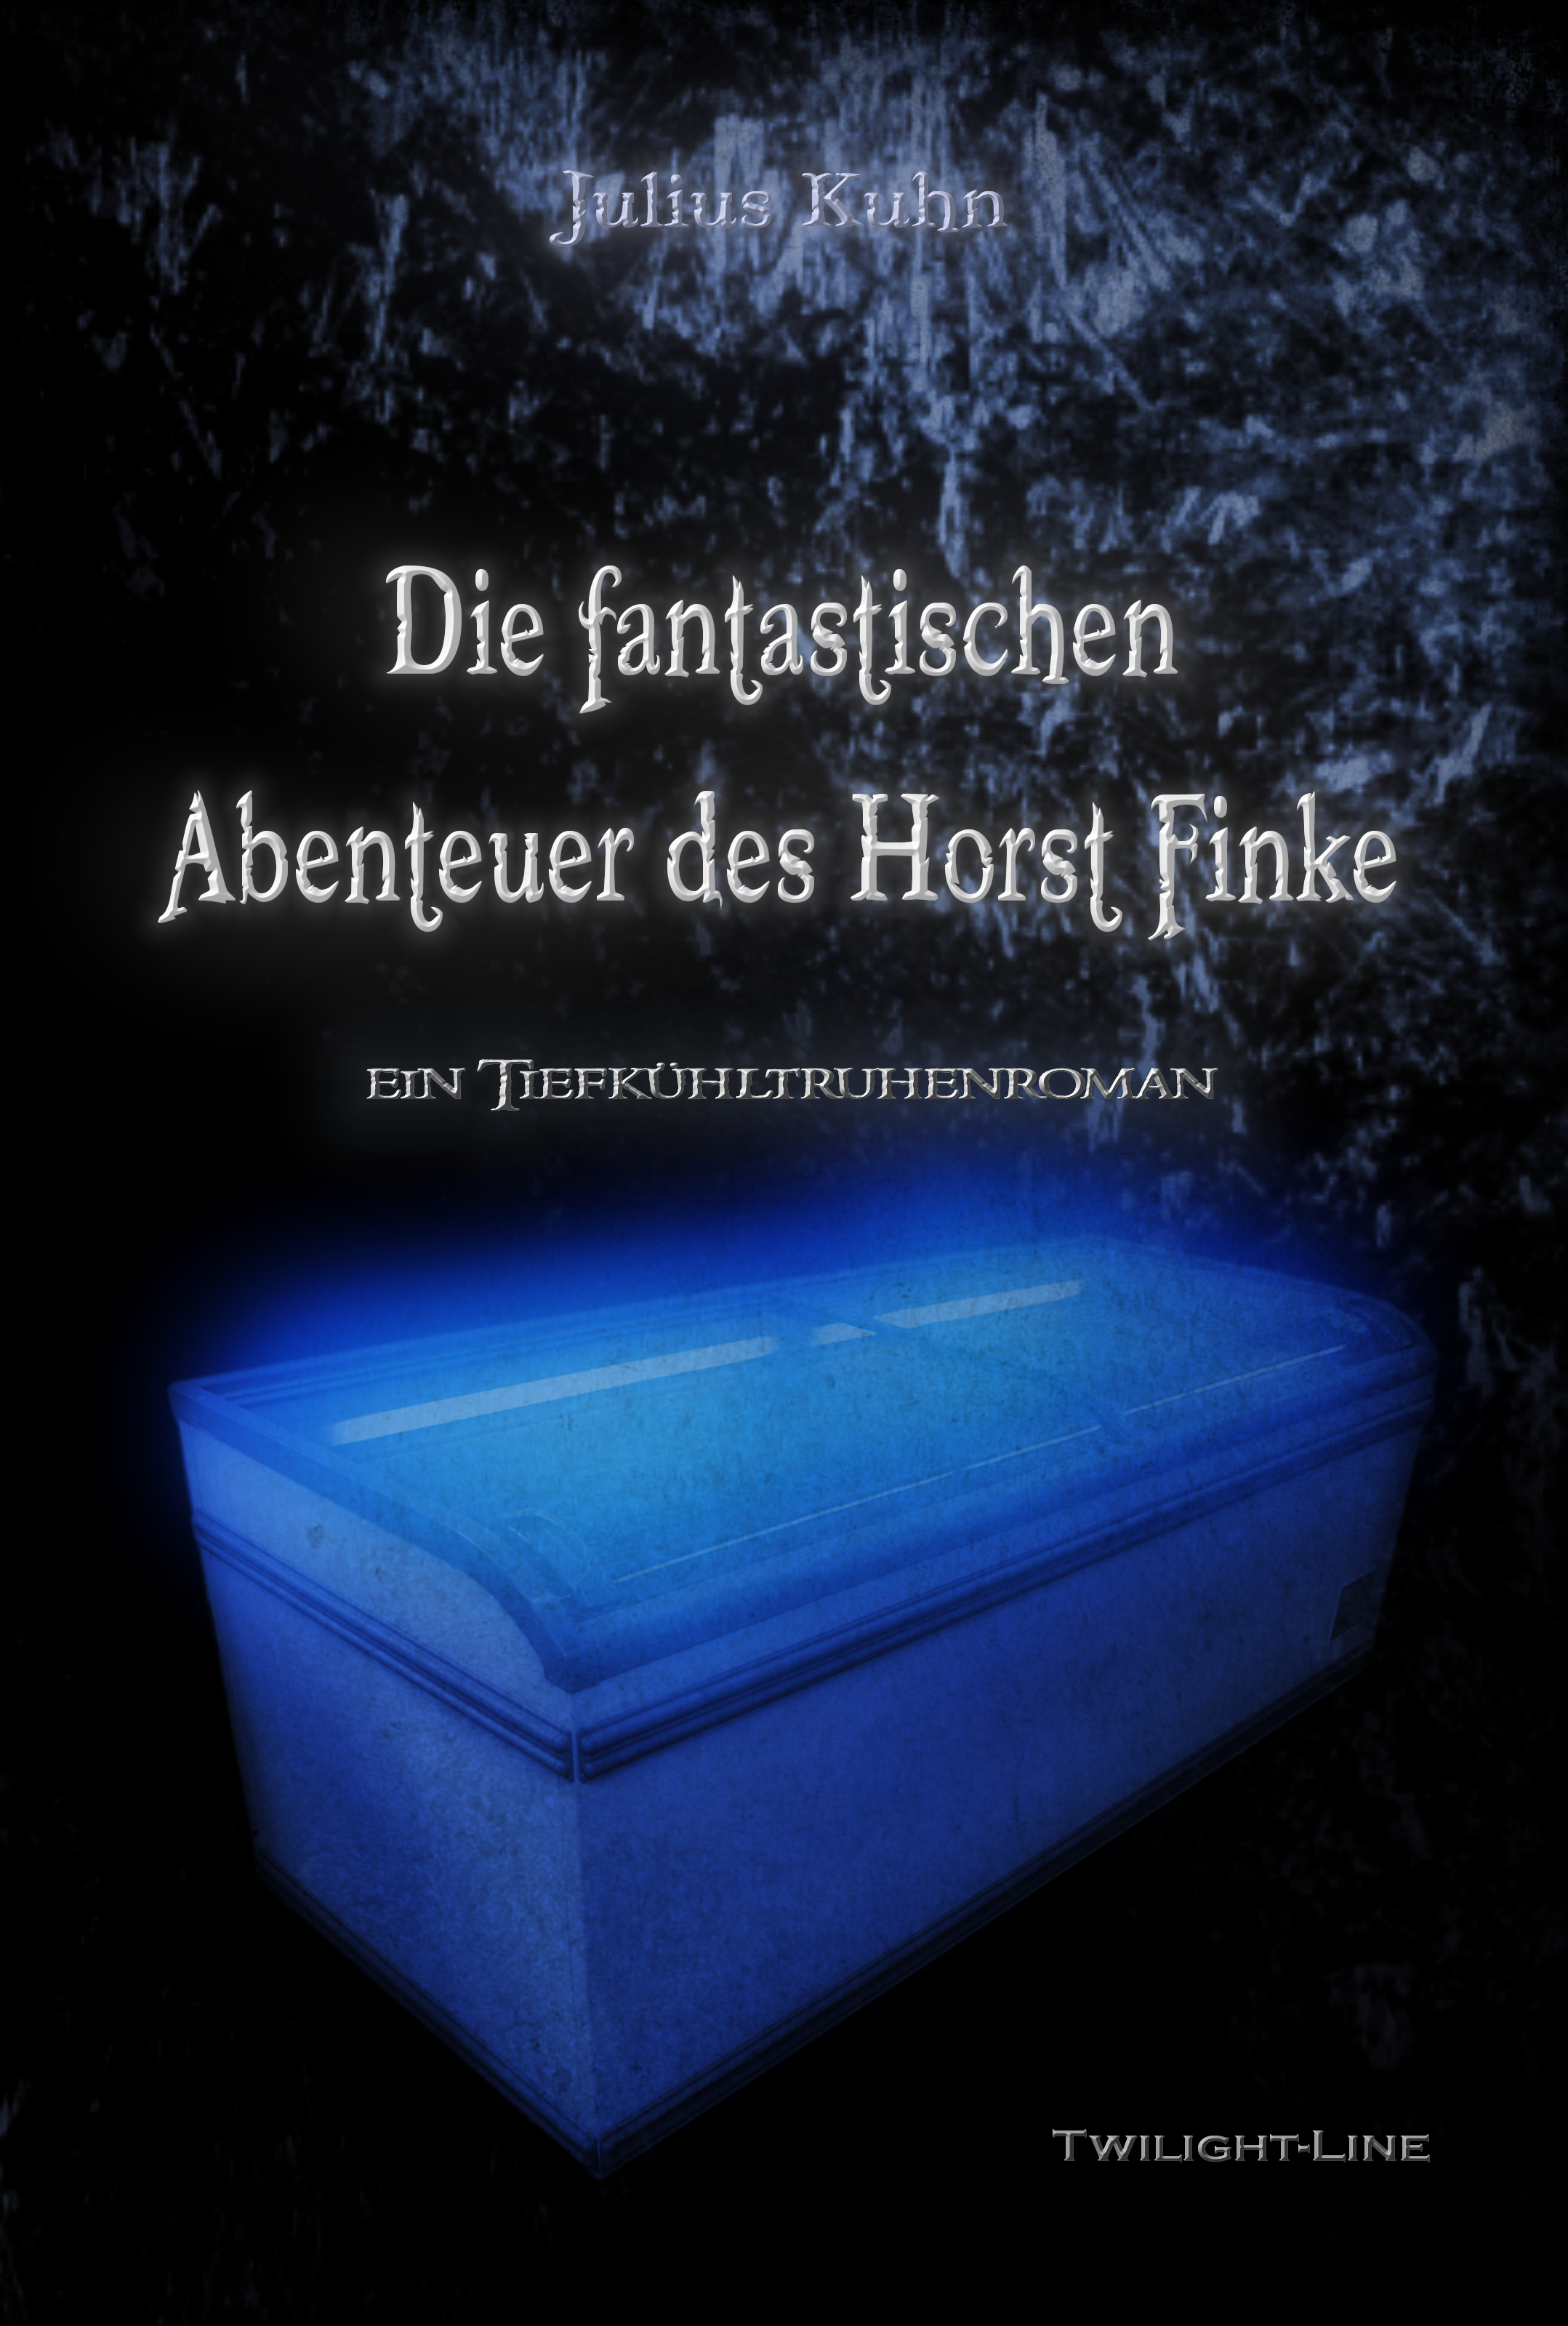 Lesung aus: Die fantastischen Abenteuer des Horst Finke